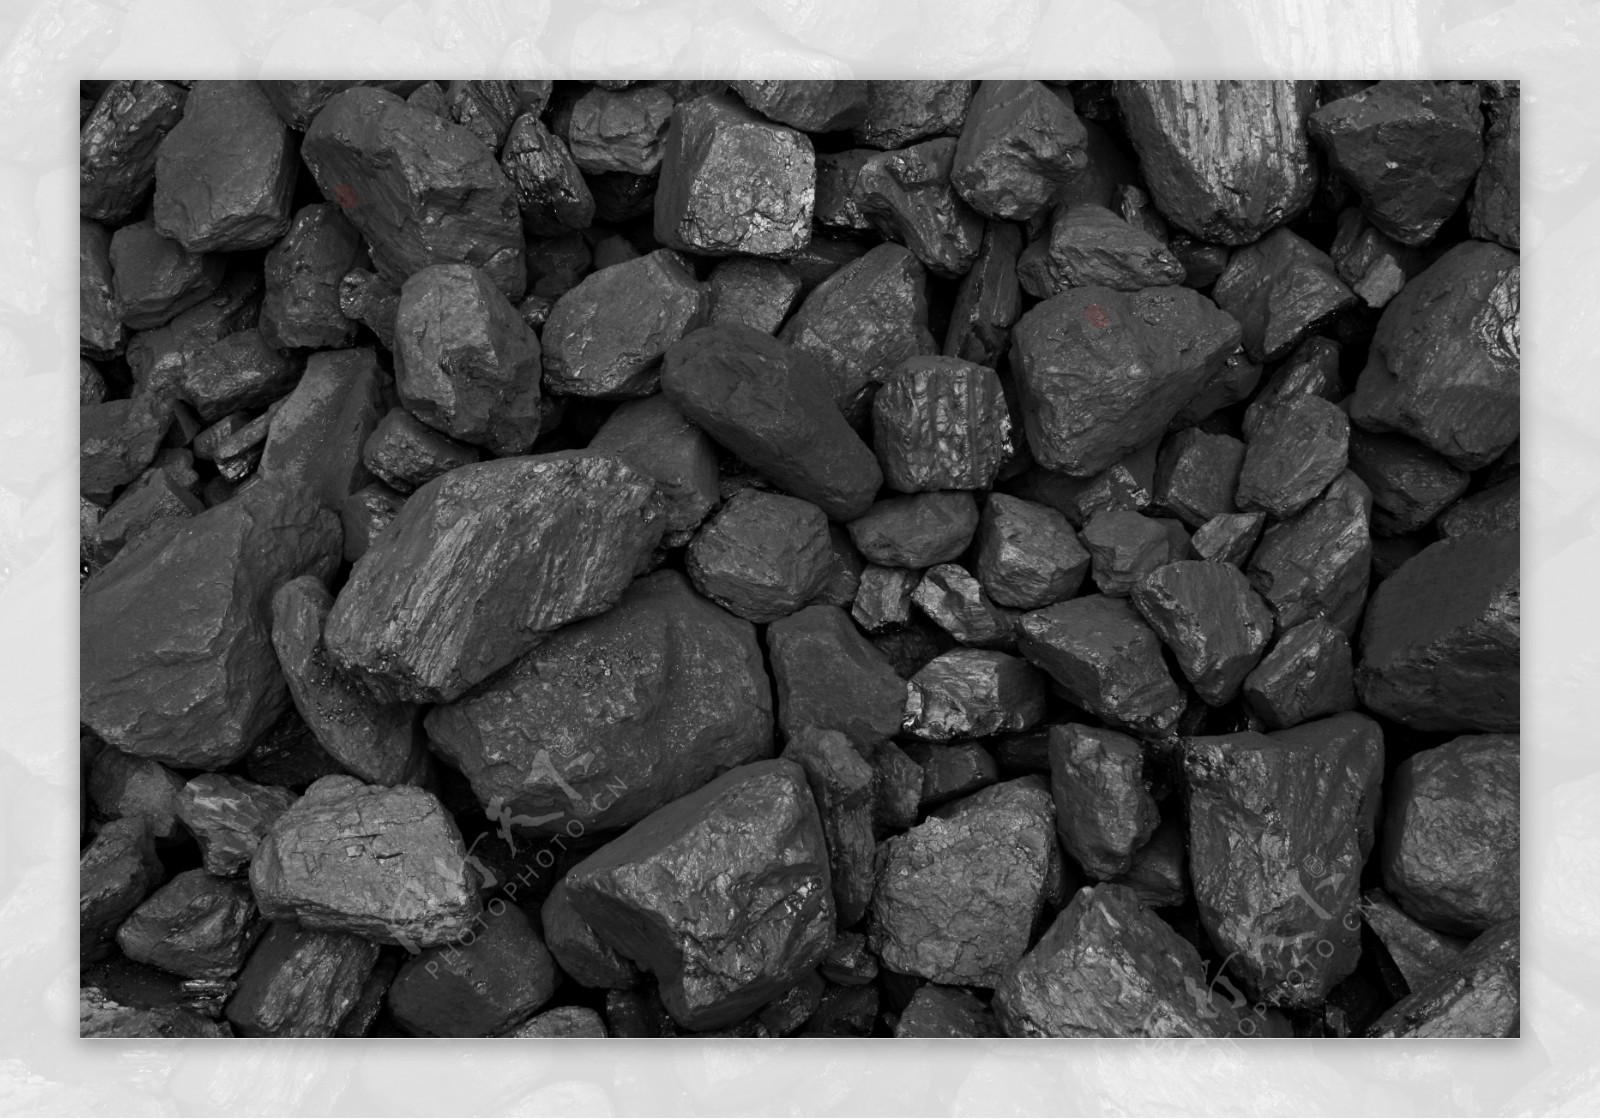 开采出来的煤碳图片